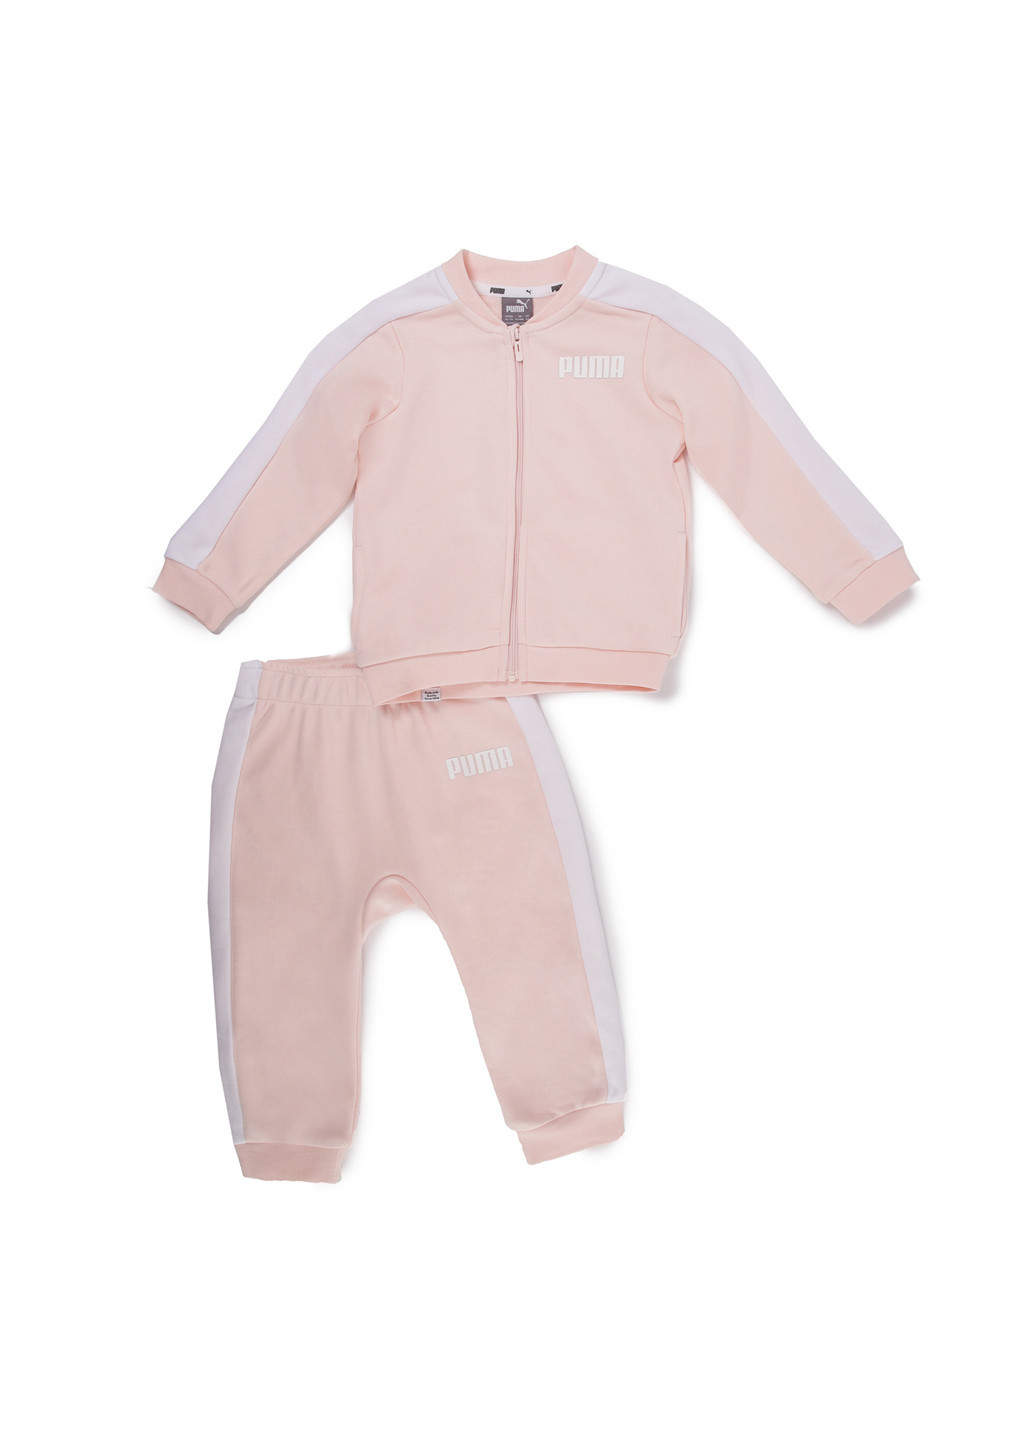 Детский комплект Contrast Infant Tracksuit Puma однотонный розовый спортивный хлопок, полиэстер, эластан